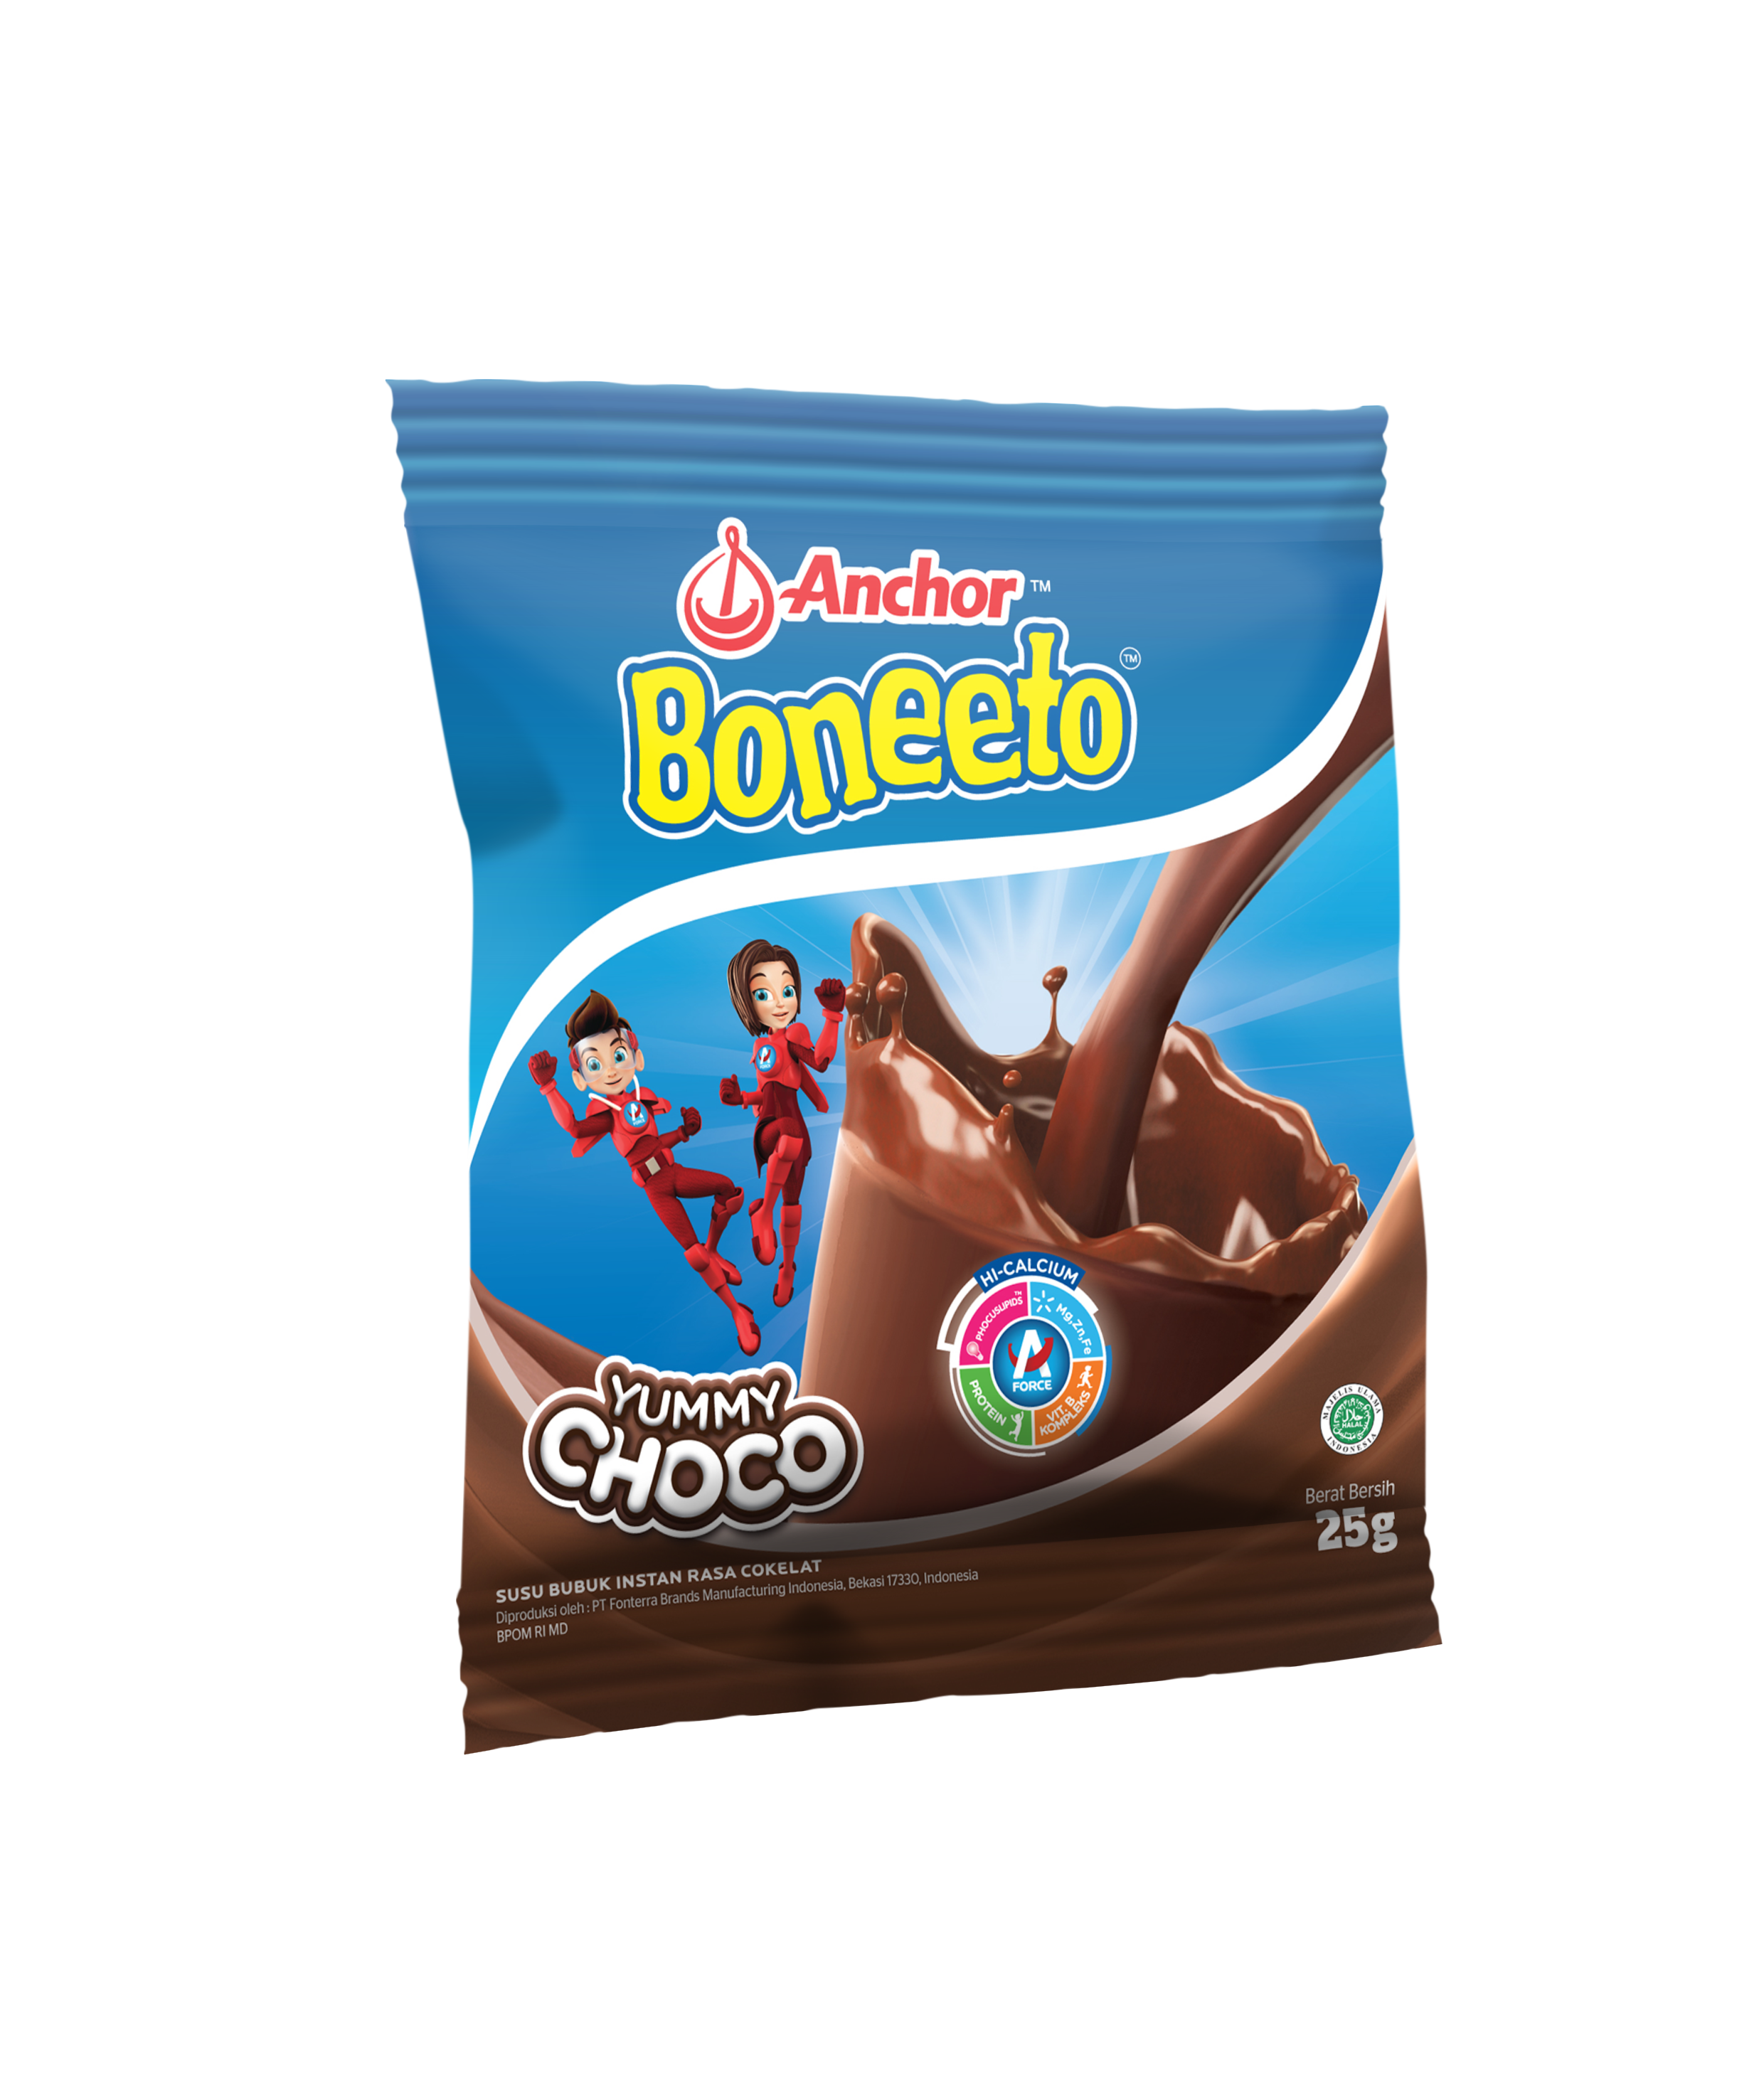 Sachet Boneeto Mockup Cokelat 25g.png